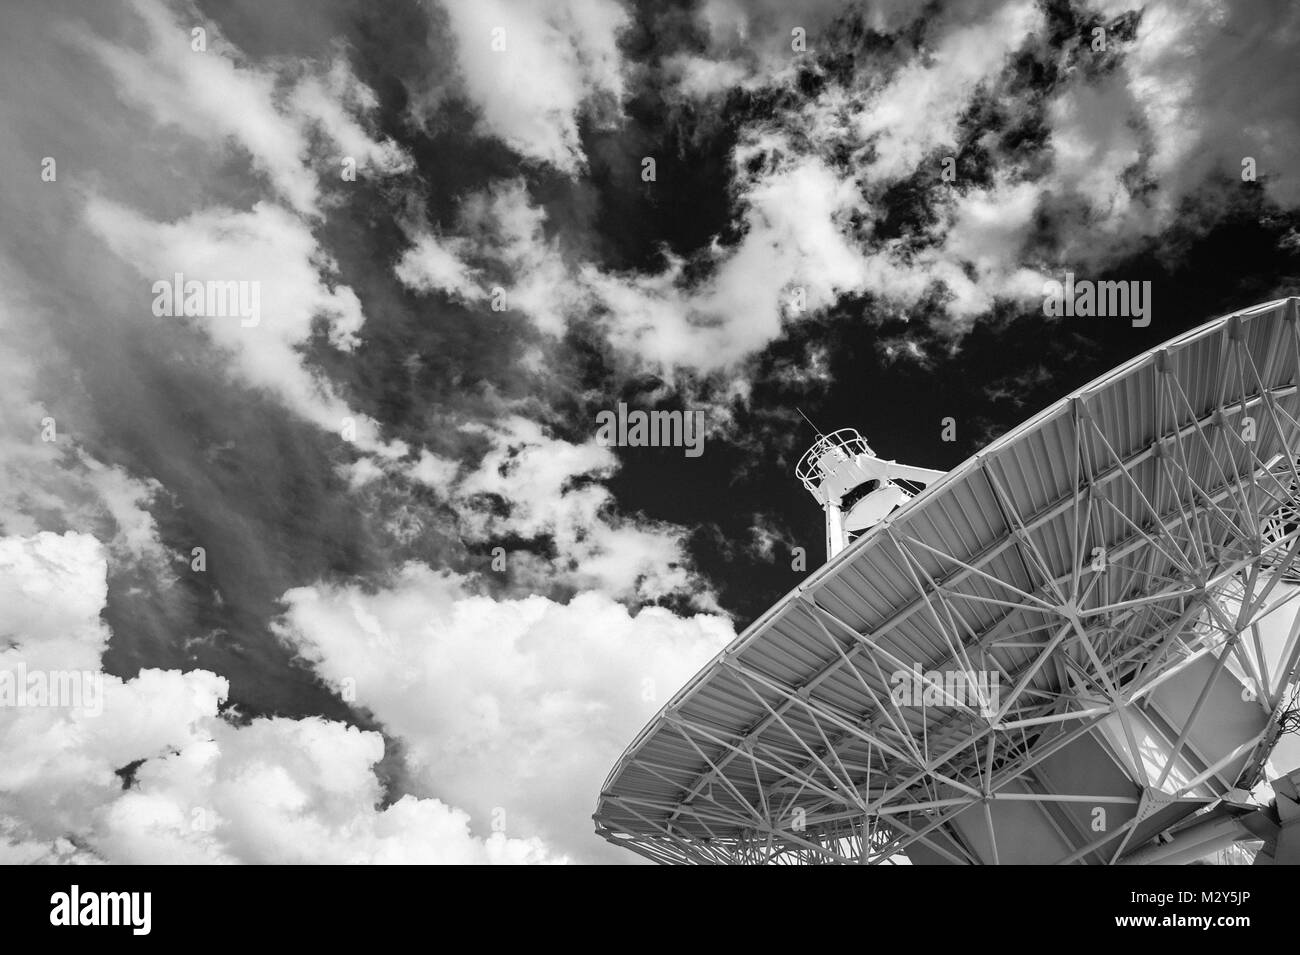 Bianco & Nero fotografia di un grande array (VLA) Radio Telescope situato presso il National Radio Astronomy Observatory Sito in Socorro, Nuovo Messico. Foto Stock